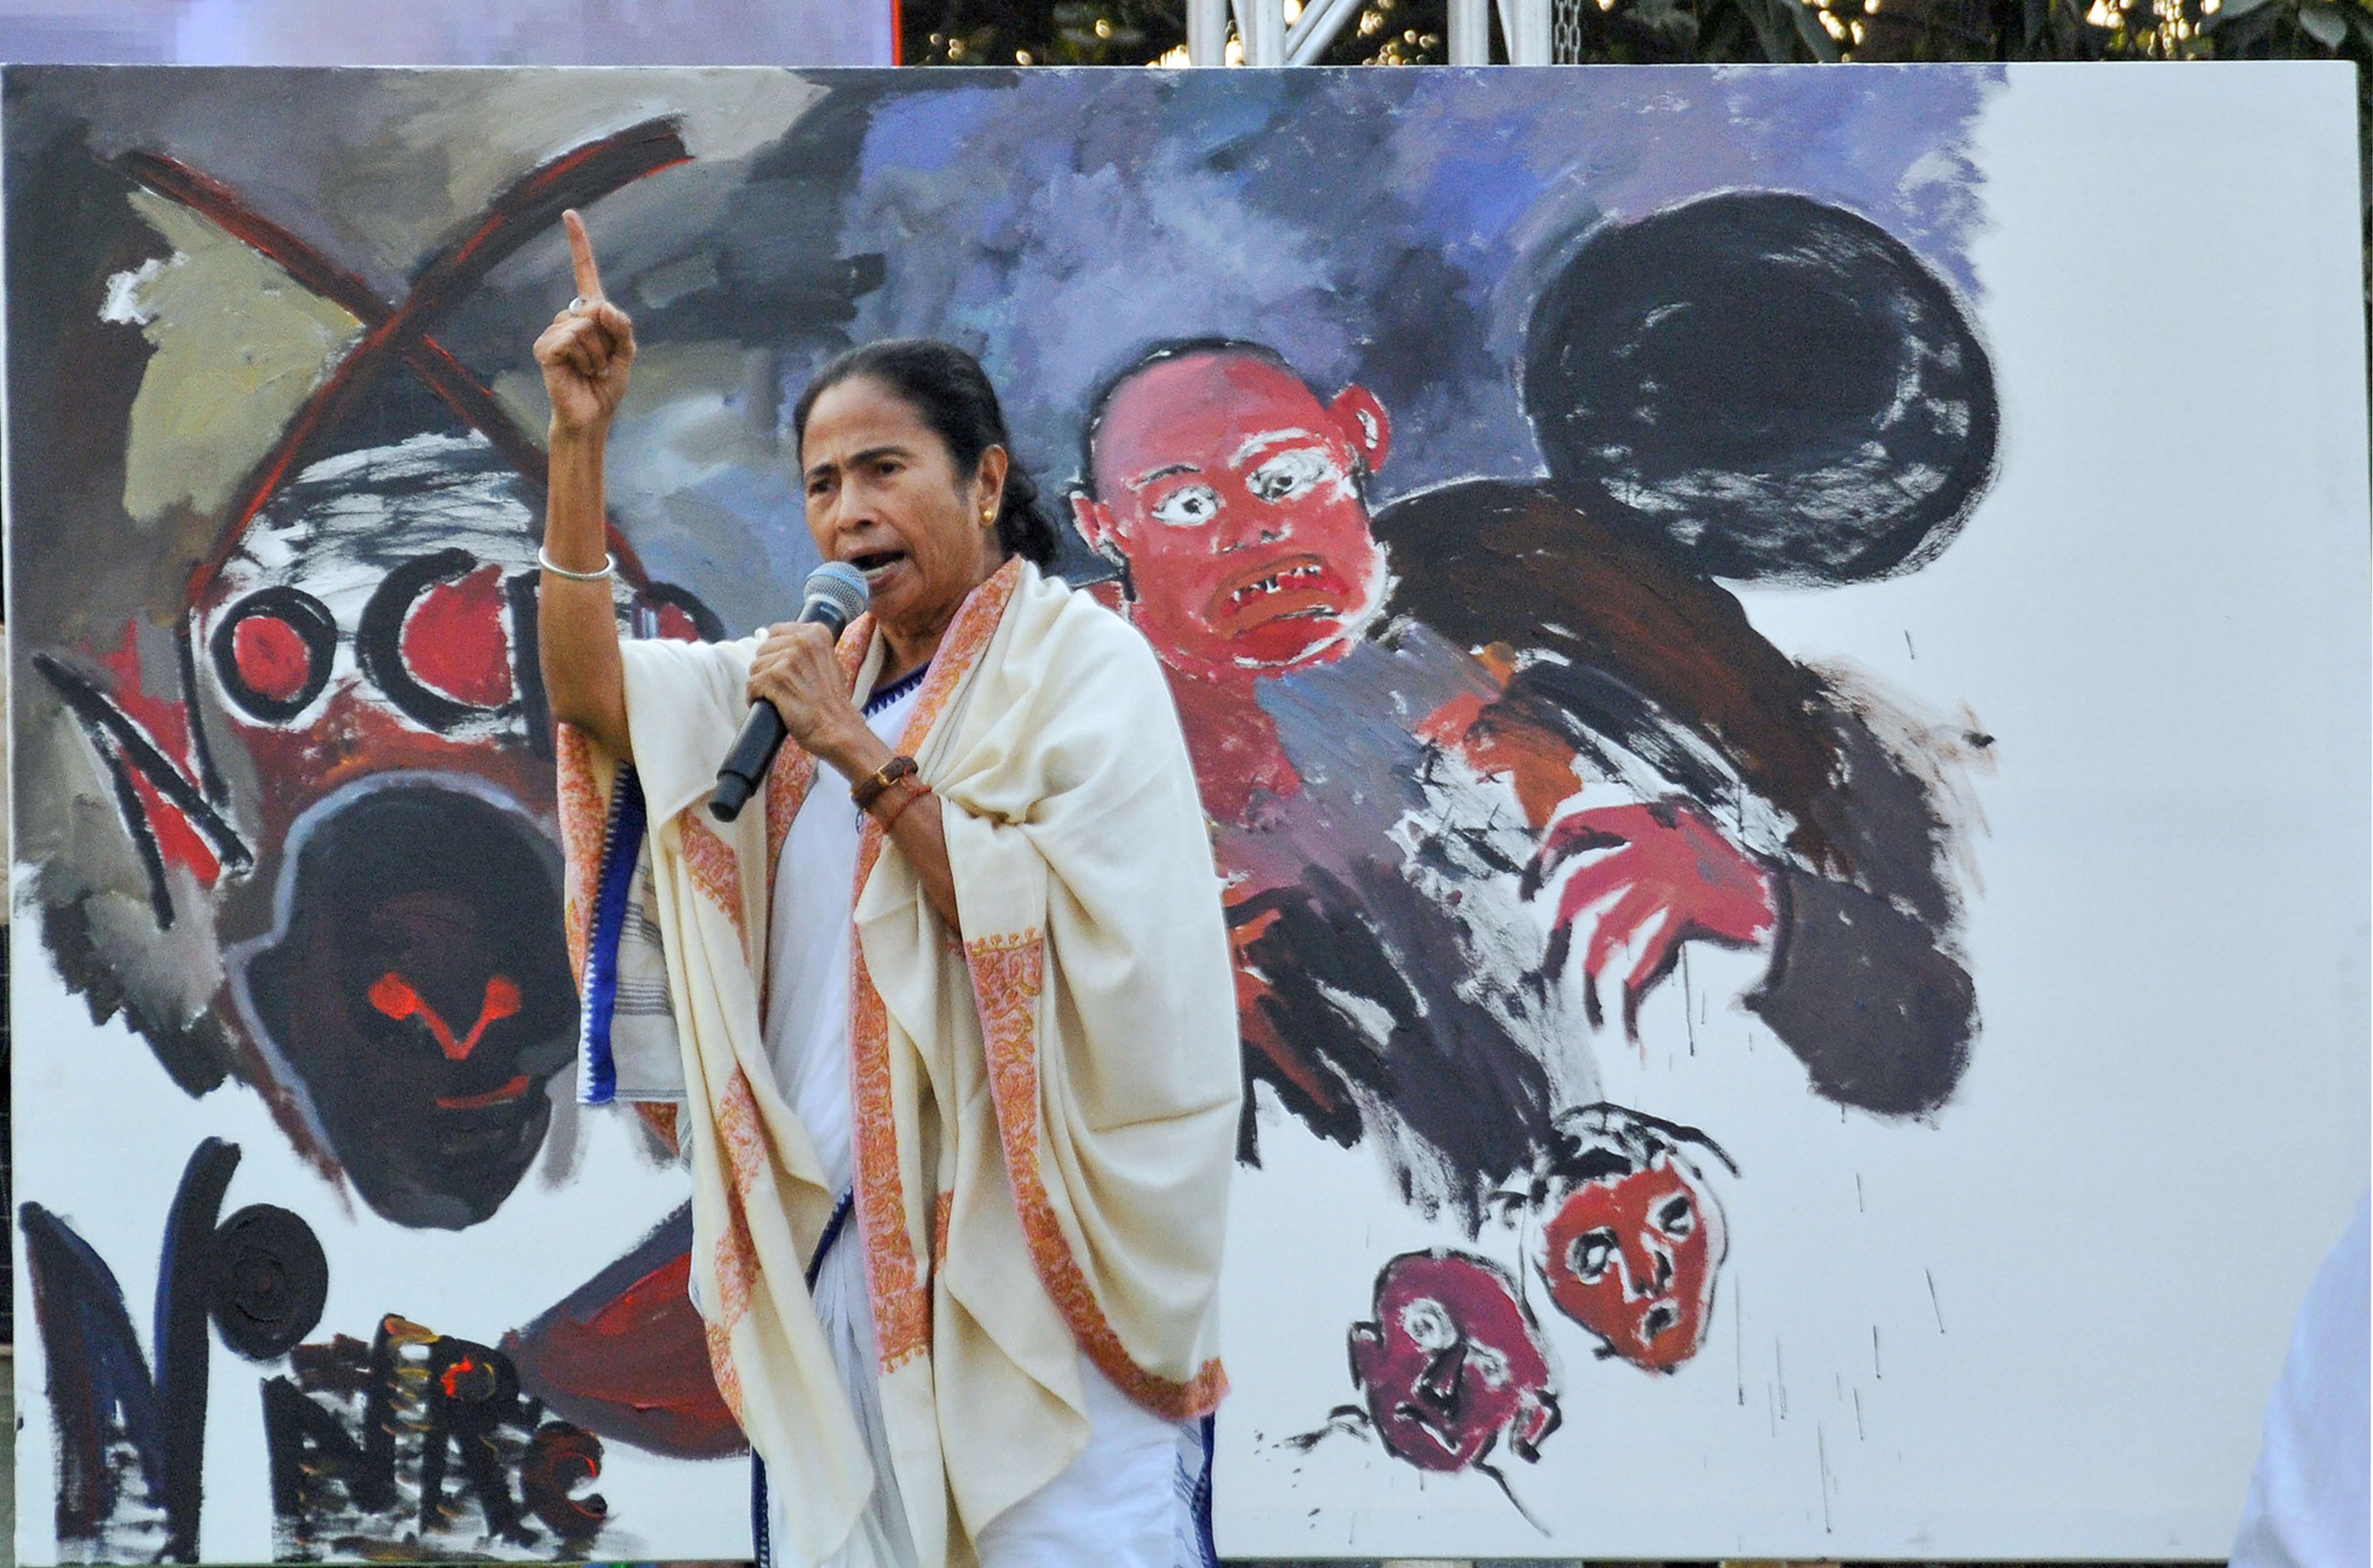 Mamata Banerjee, CM of West Bengal, India by richardbgomes on DeviantArt